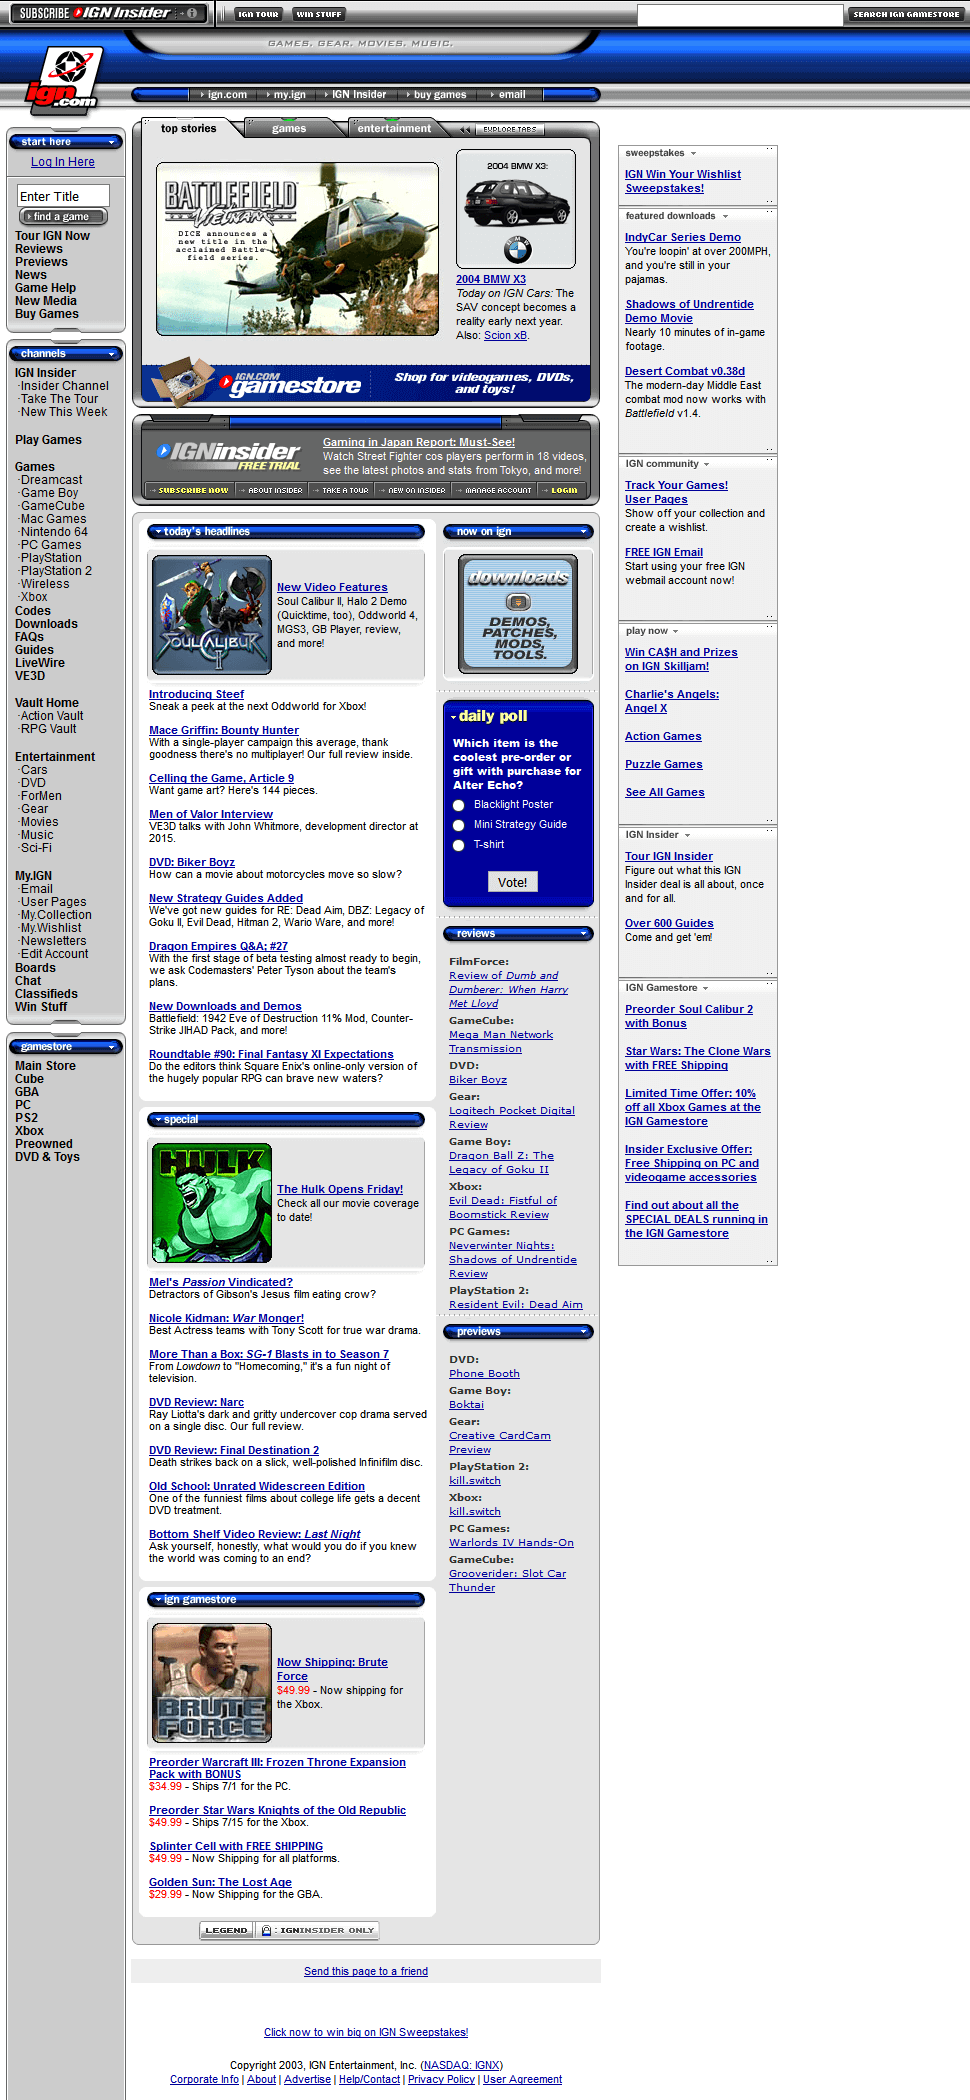 IGN in 2003